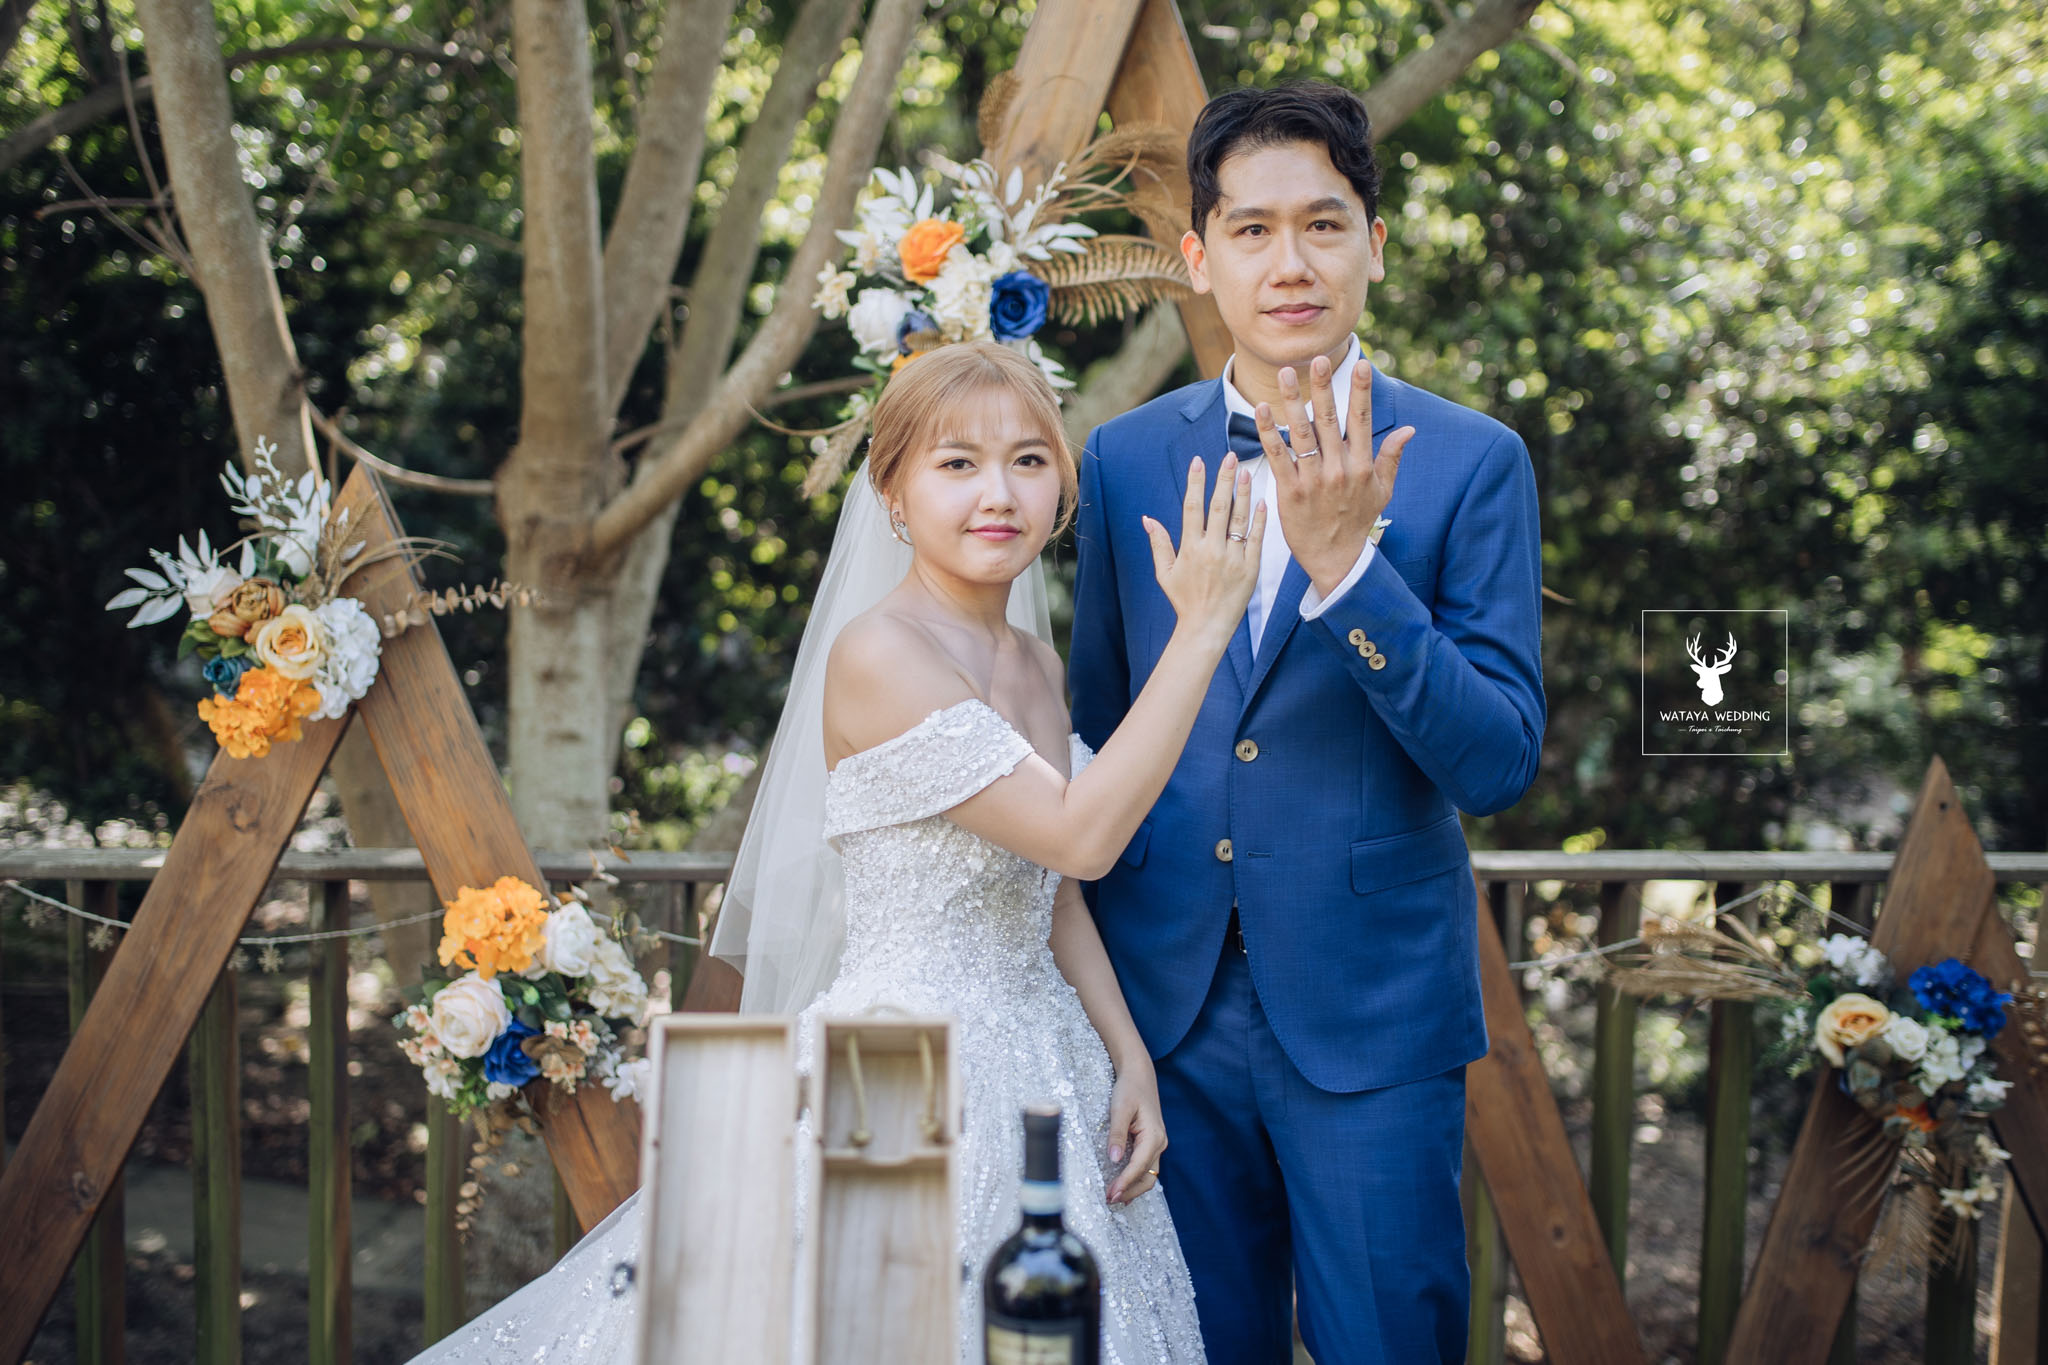 台中綿谷婚禮平面攝影 (40)